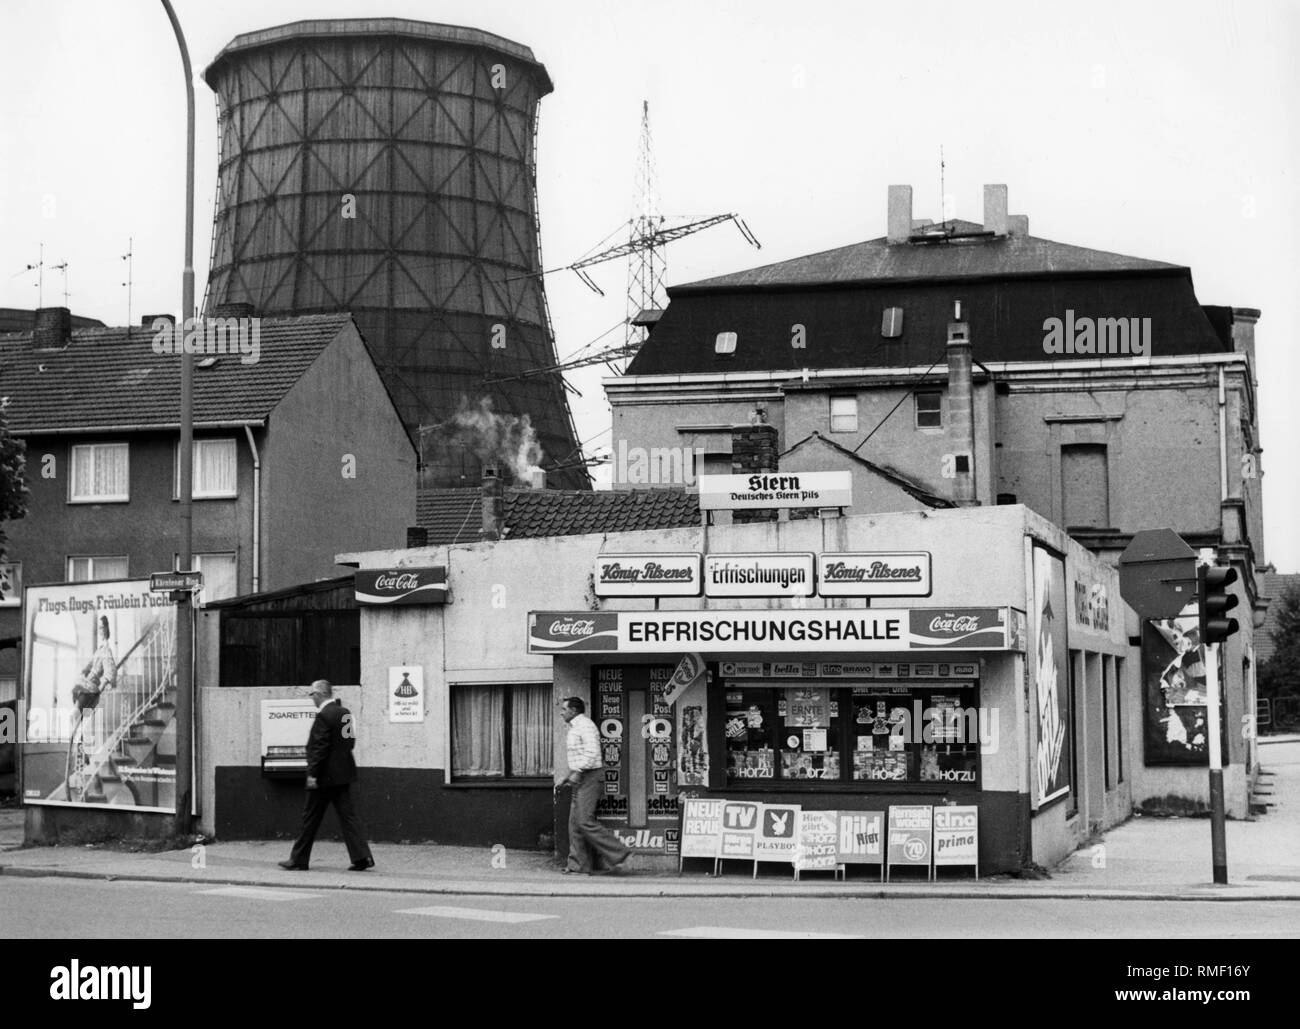 Blick auf einen Kiosk in einer Reihe von Häusern an der Kaertener Ring in Gelsenkirchen. Vor dem Kiosk gibt es Zeichen Werbung Zeitungen und Zeitschriften. Im Hintergrund eine hohe Spannung Pylon und einer hölzernen Kühlturm. Undatiertes Foto. Auf der Kiosk ist ein Zeichen der Stern-Brauerei aus Essen. Diese geschlossen in 1989. Stockfoto